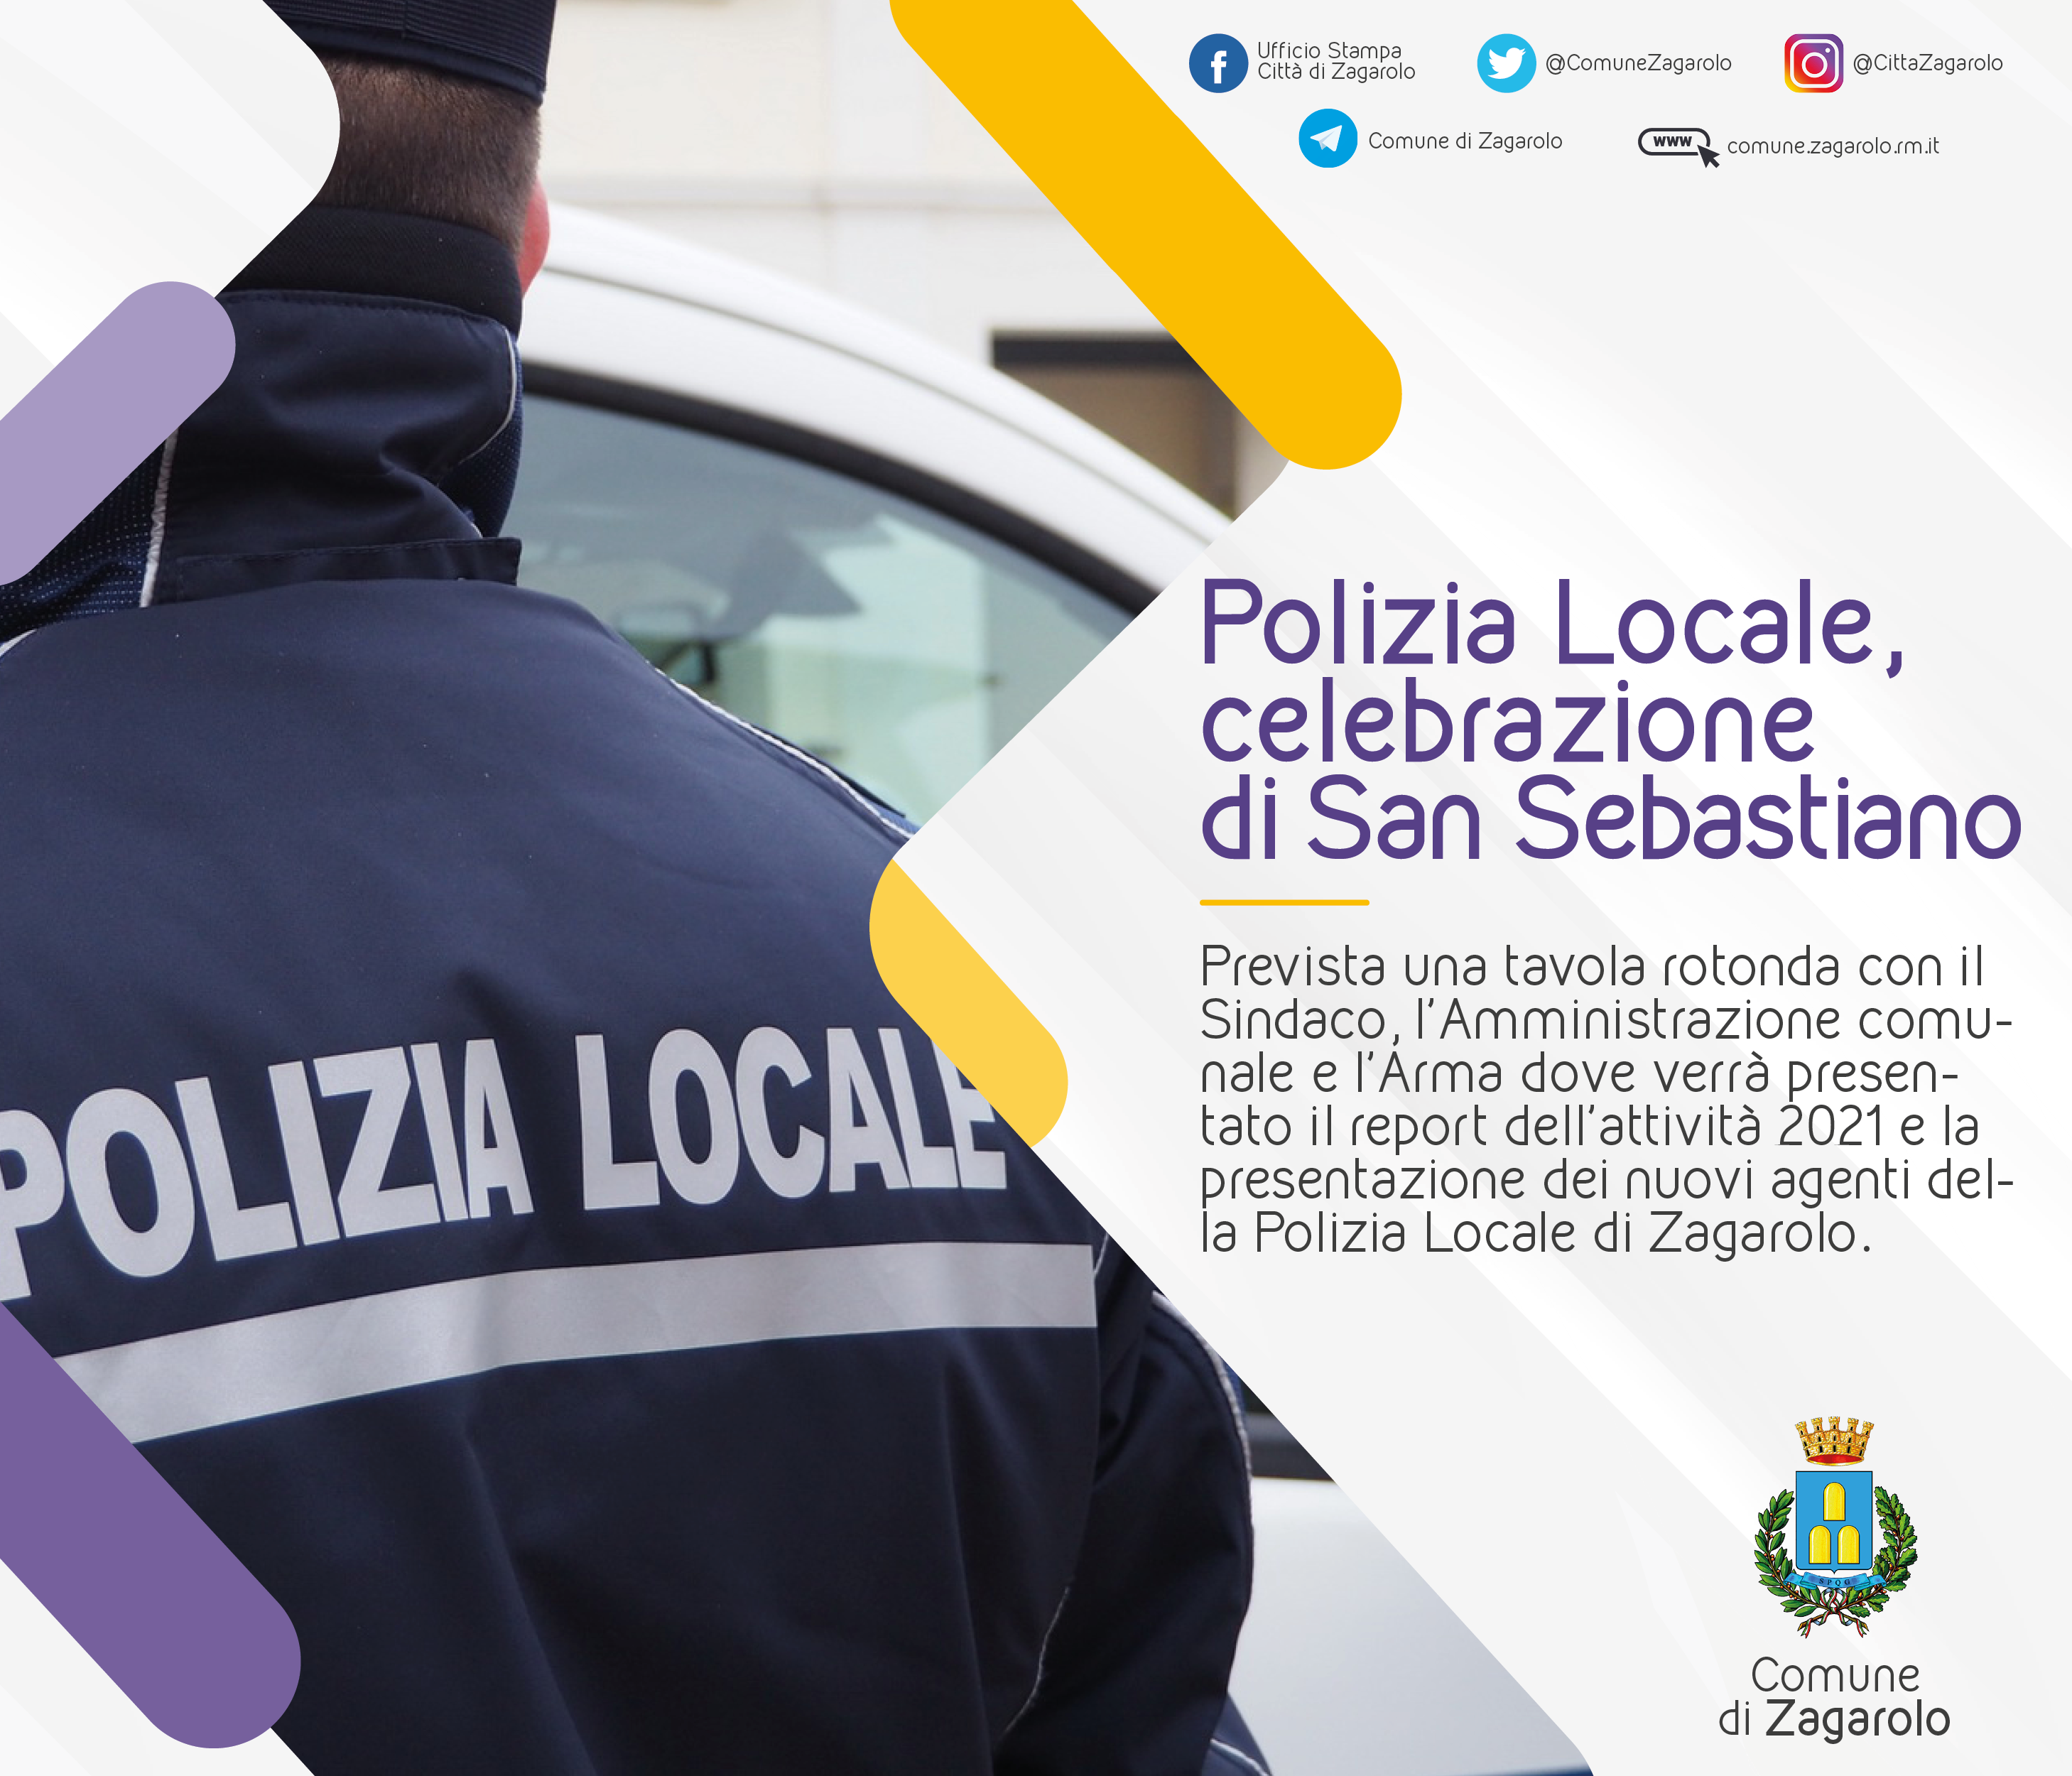 CELEBRAZIONE DI SAN SEBASTIANO, PATRONO DELLE POLIZIE LOCALI D'ITALIA